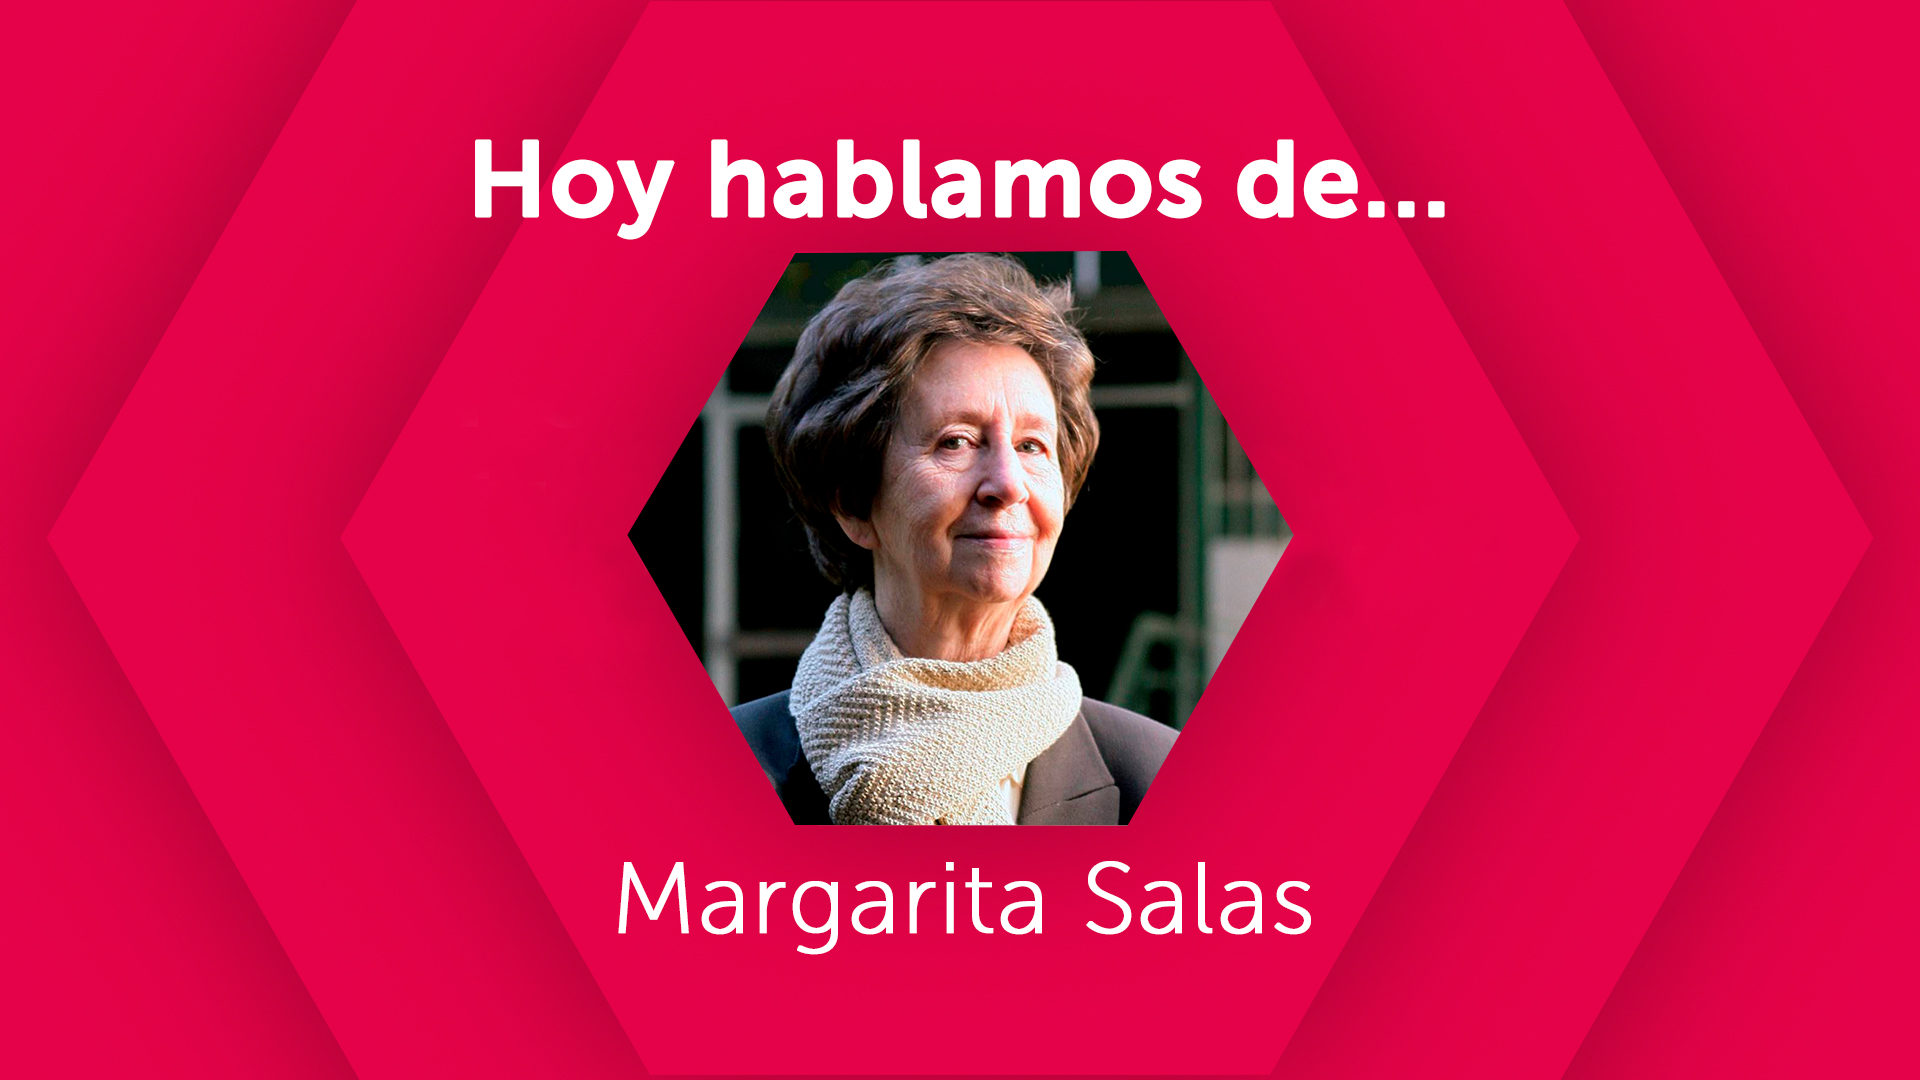 Hoy hablamos de Margarita Salas